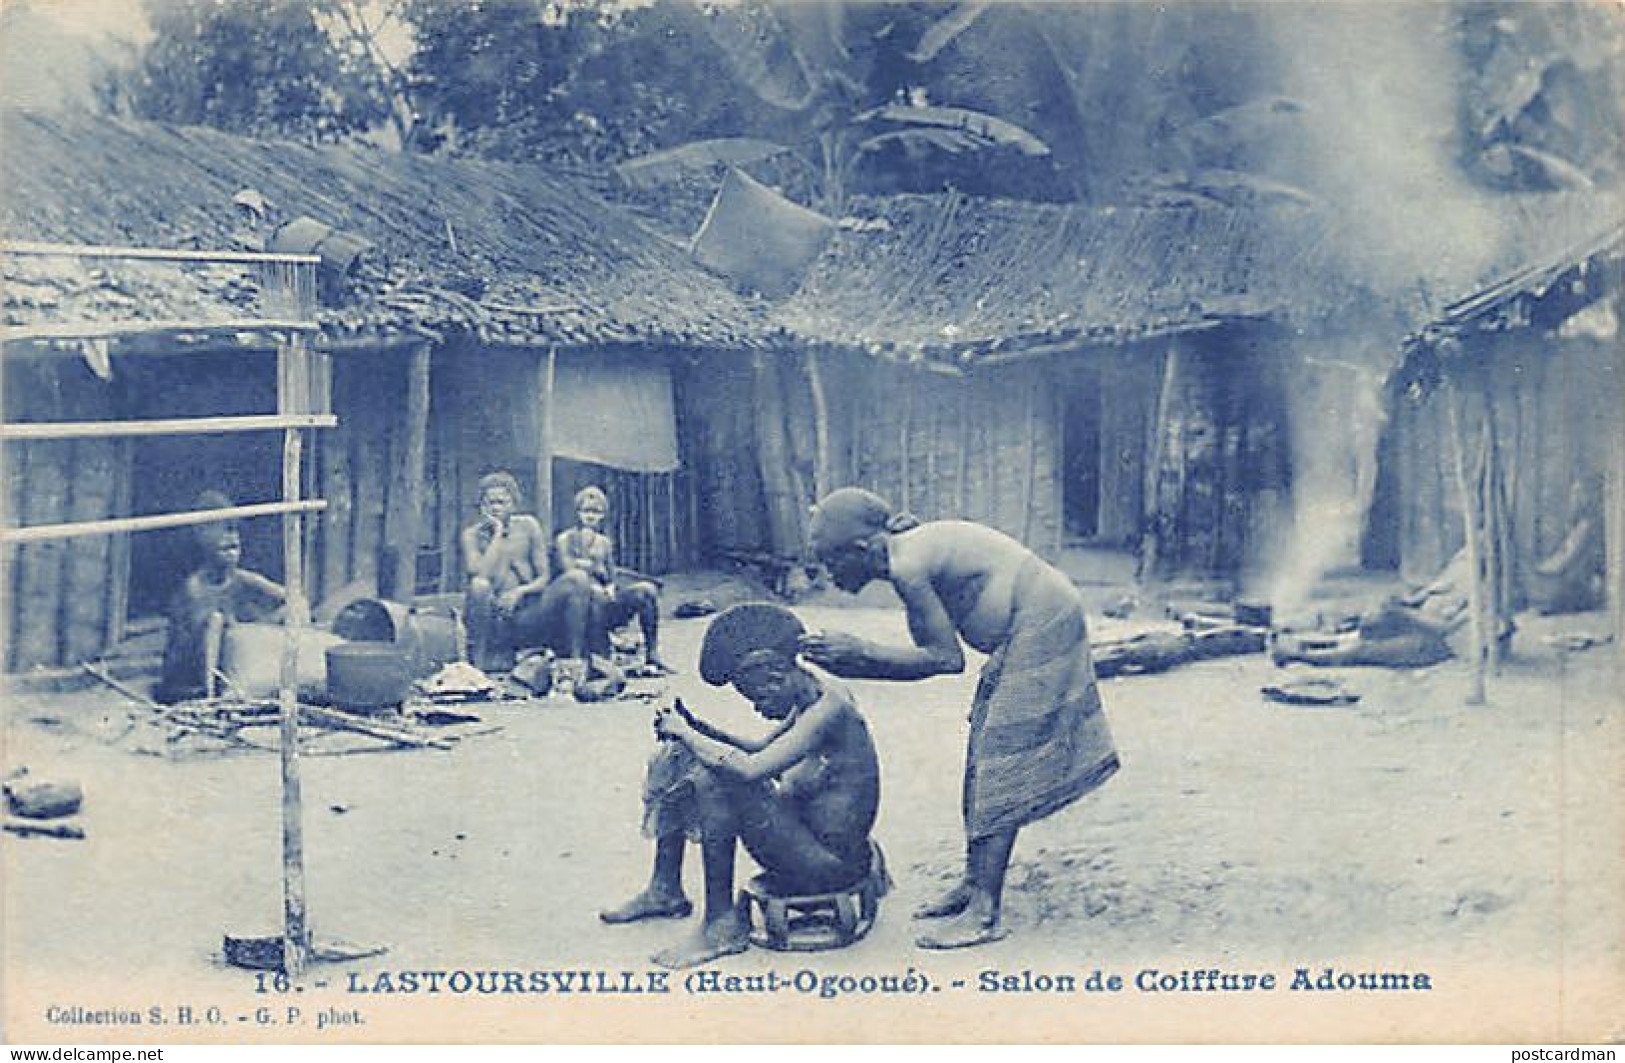 Gabon - LASTOURVILLE - Salon De Coiffure Adouma - Ed. S.H.O. 16 - Gabon